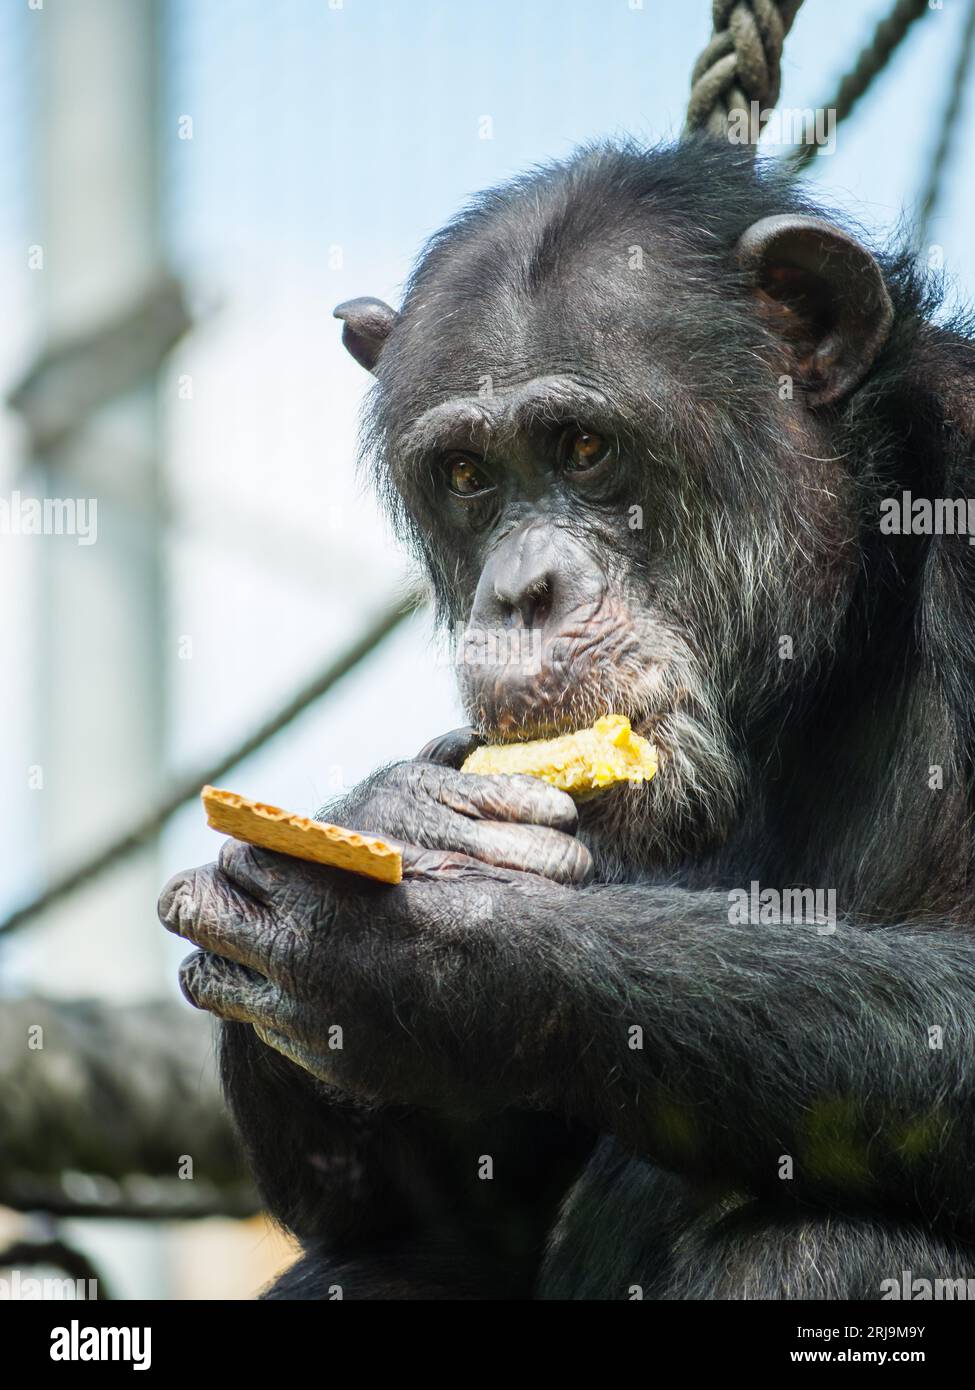 Un primo piano di uno scimpanzé nero che si gode un granoturco sul pannocciolo mentre si guarda la fotocamera Foto Stock